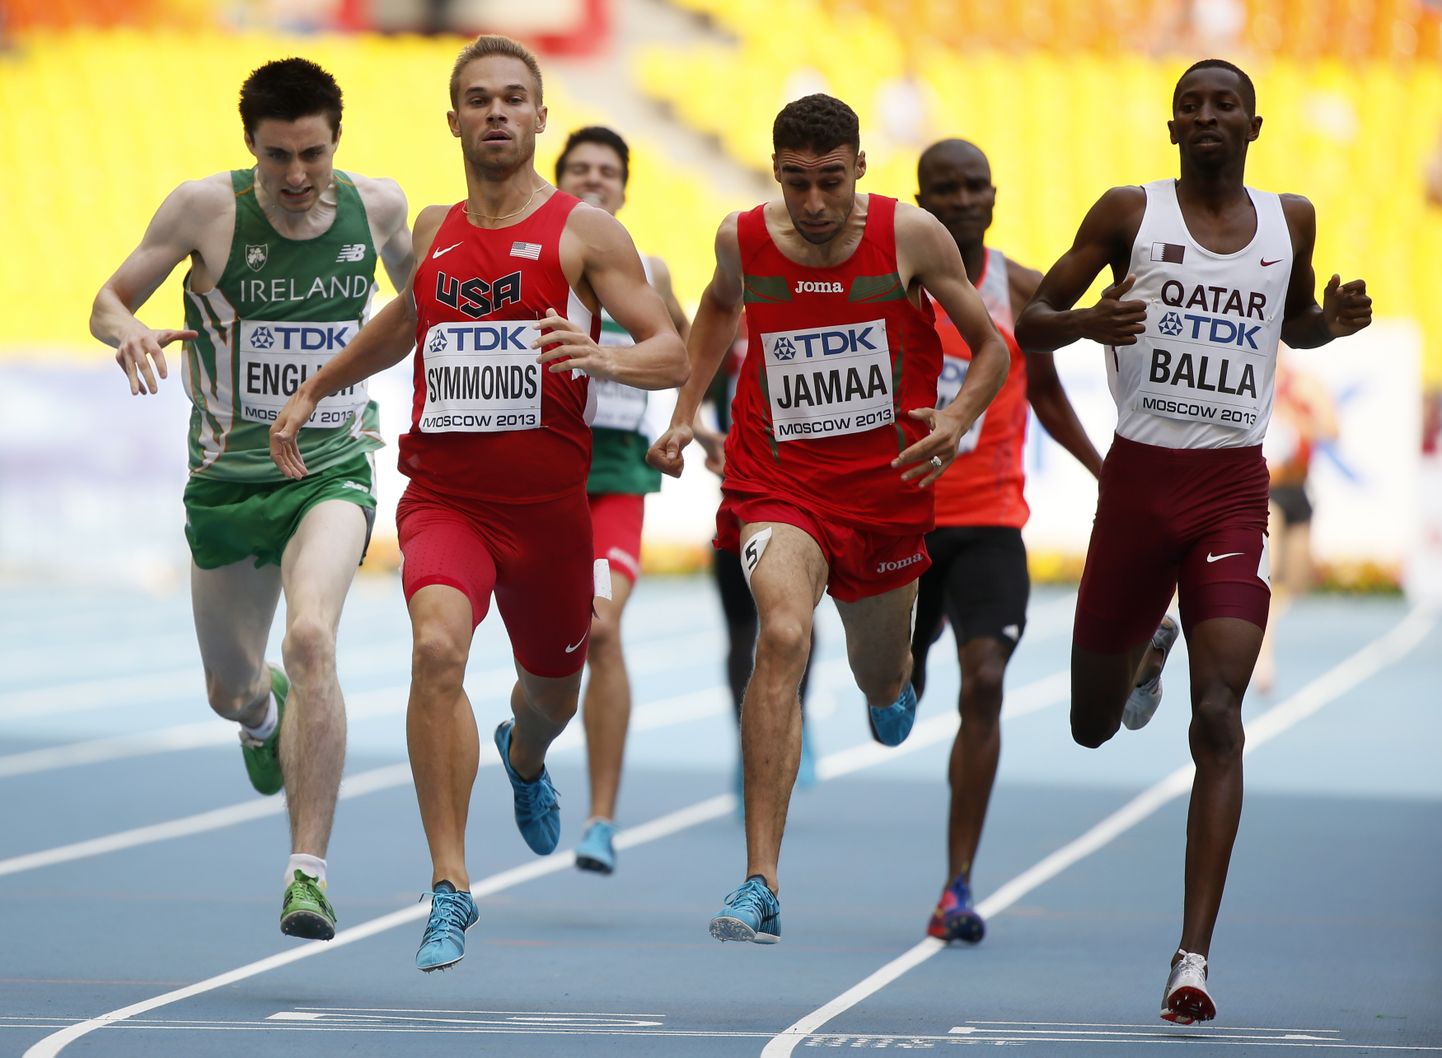 Käesoleval aastal lõppeb Katari jooksija Musaeb Abdulrahman Balla (paremal) dopingu kasutamise eest määratud võistluskeeld.